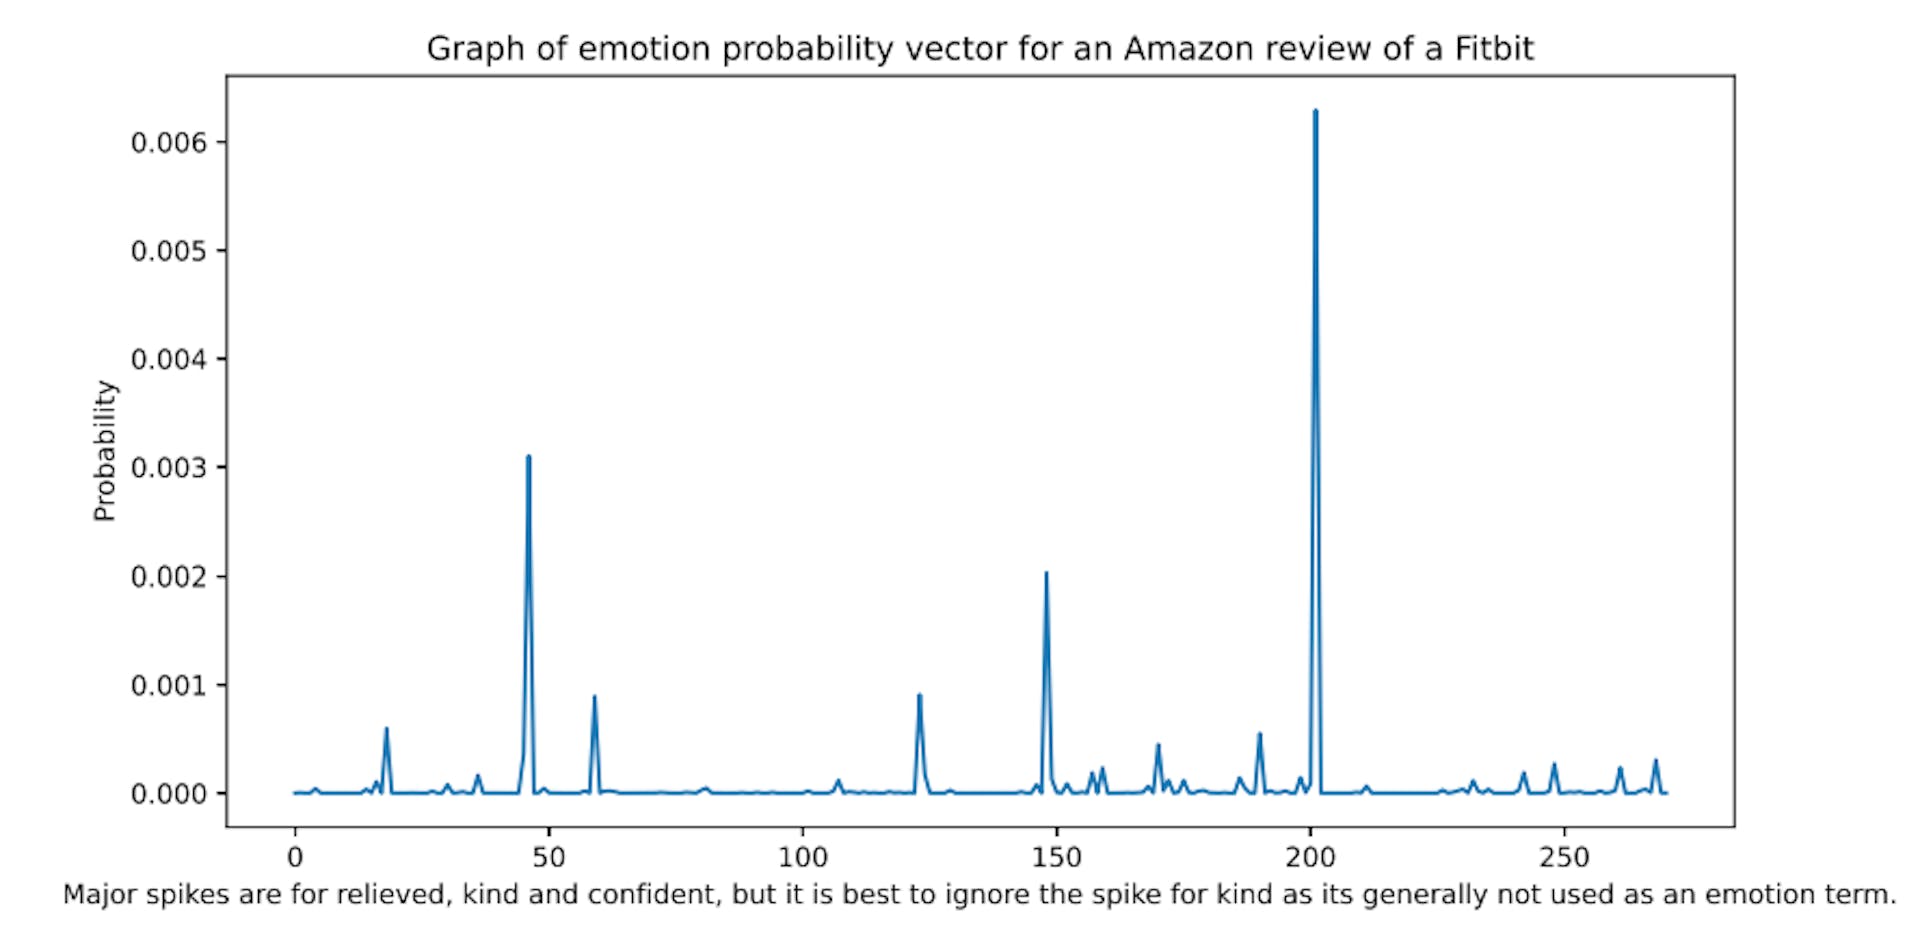 Hình 1: Ví dụ về xác suất từ điển cảm xúc được chia tỷ lệ từ bài đánh giá trên Amazon. Các từ trong từ điển được sắp xếp theo thứ tự abc.